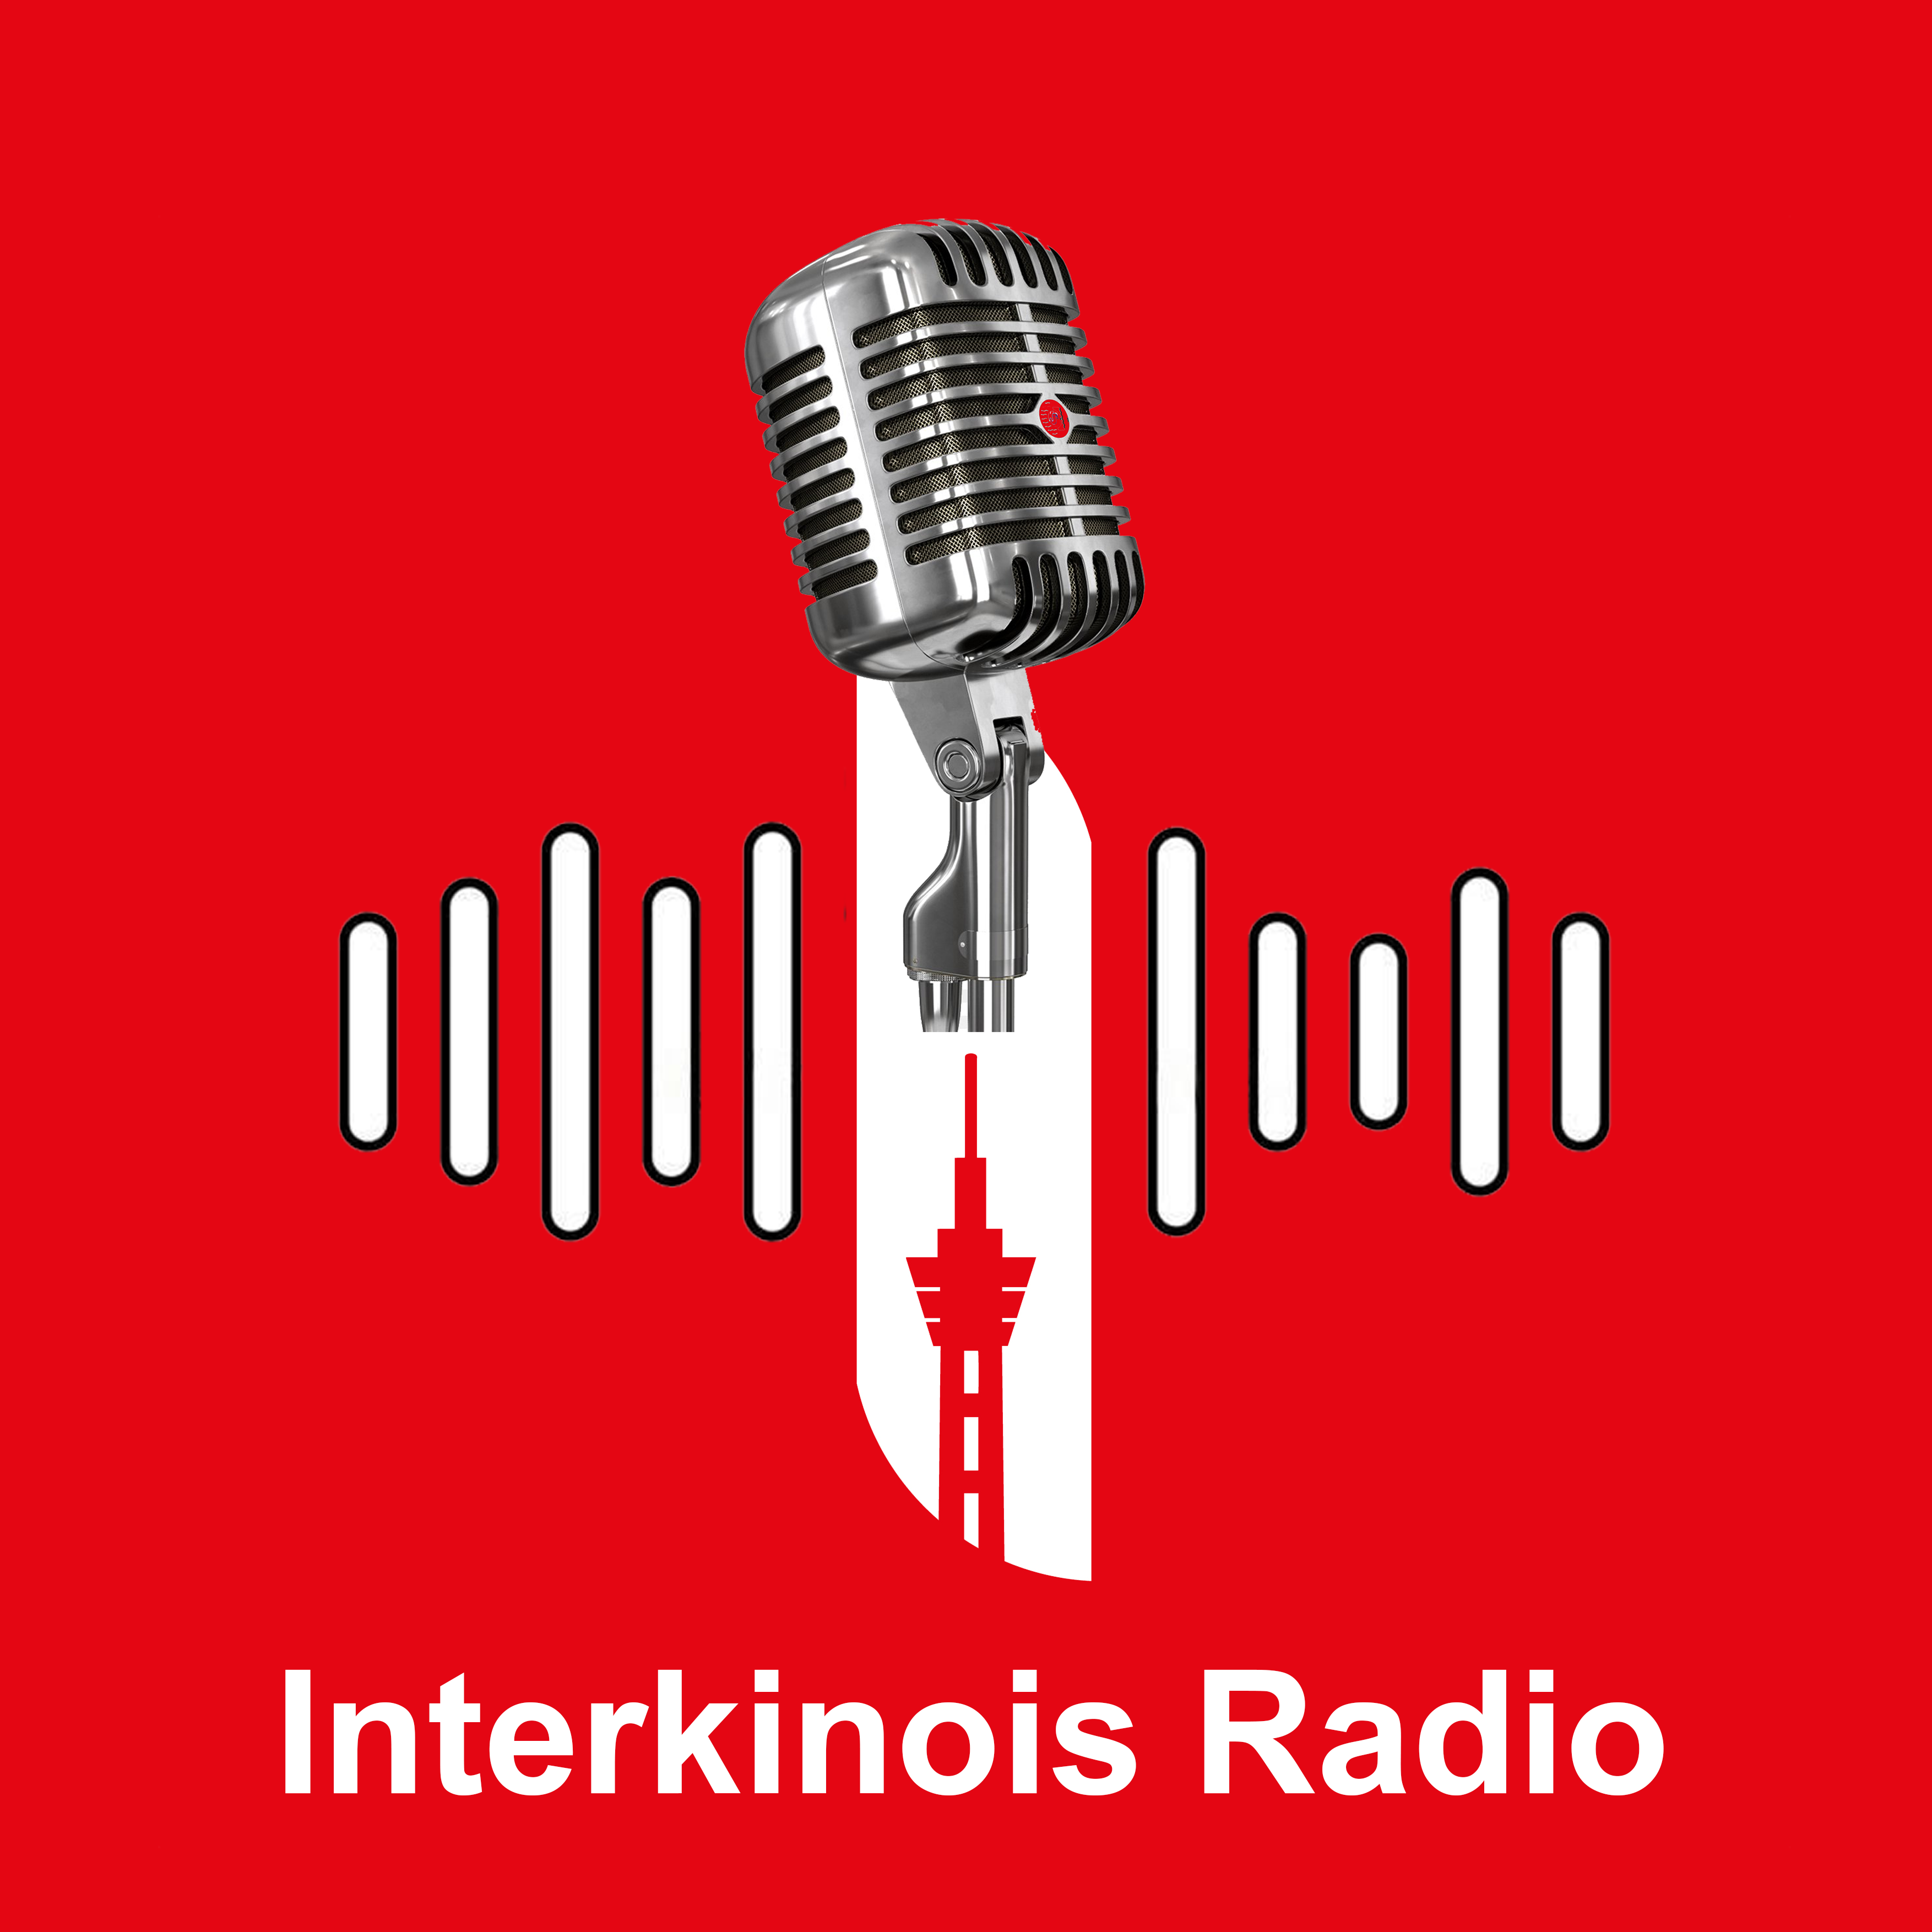 Interkinois Communication lance une radio en ligne pour une nouvelle expérience au Congo